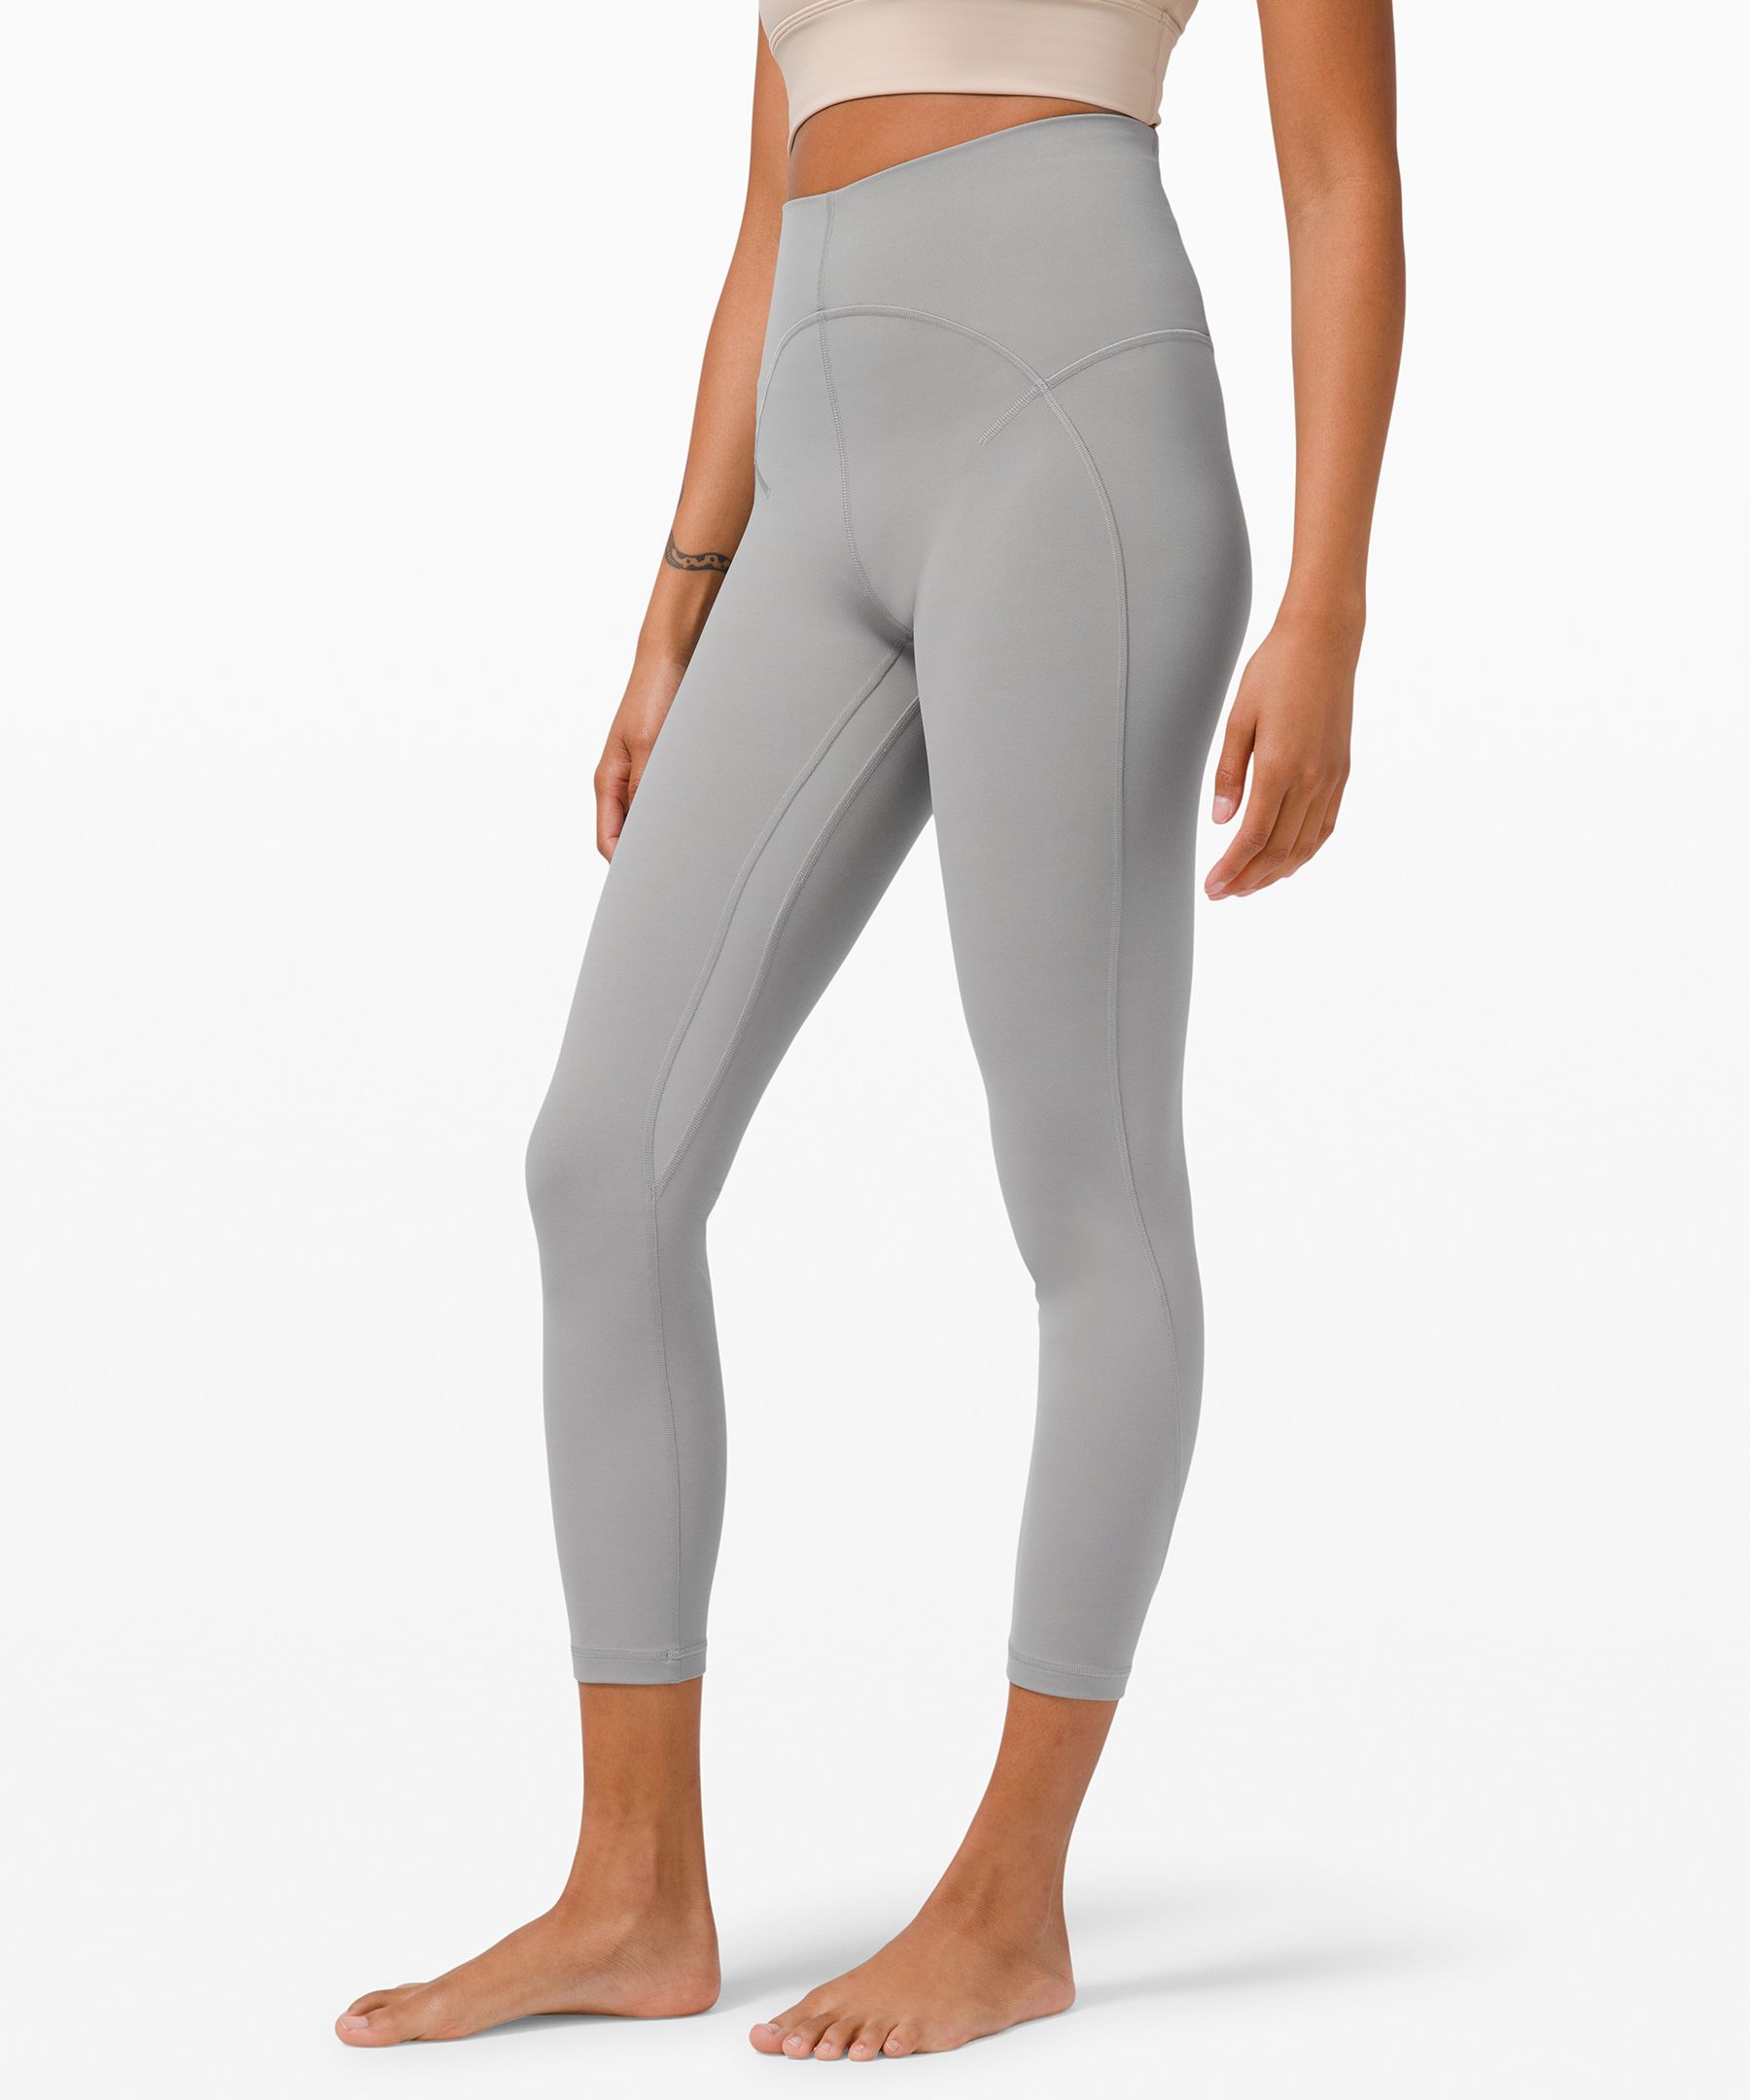 light gray lululemon leggings